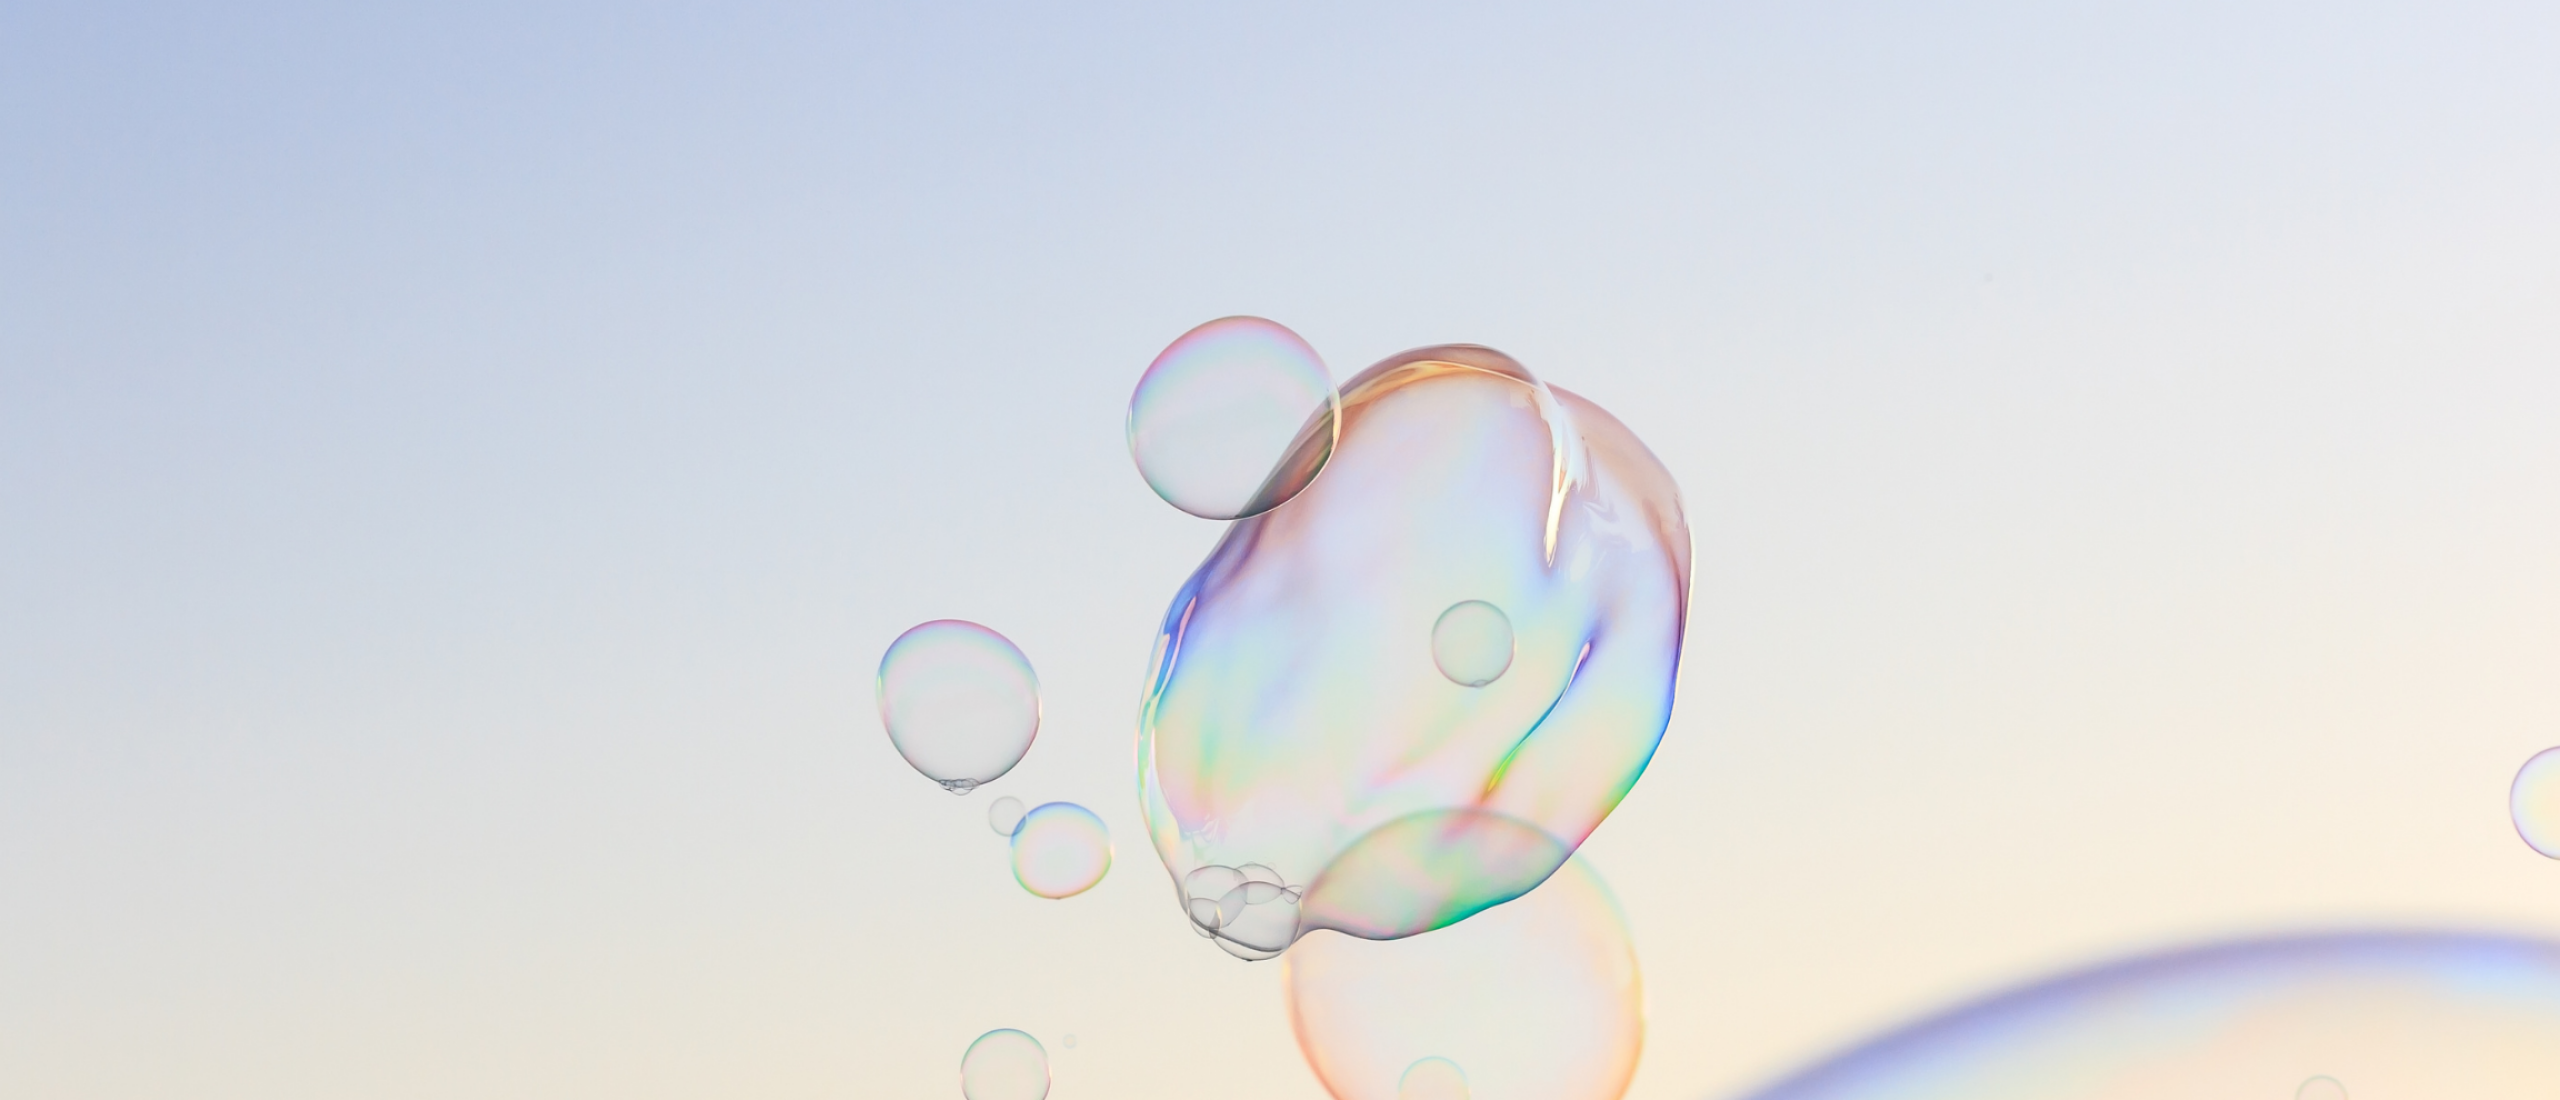 De 50+ bubbel